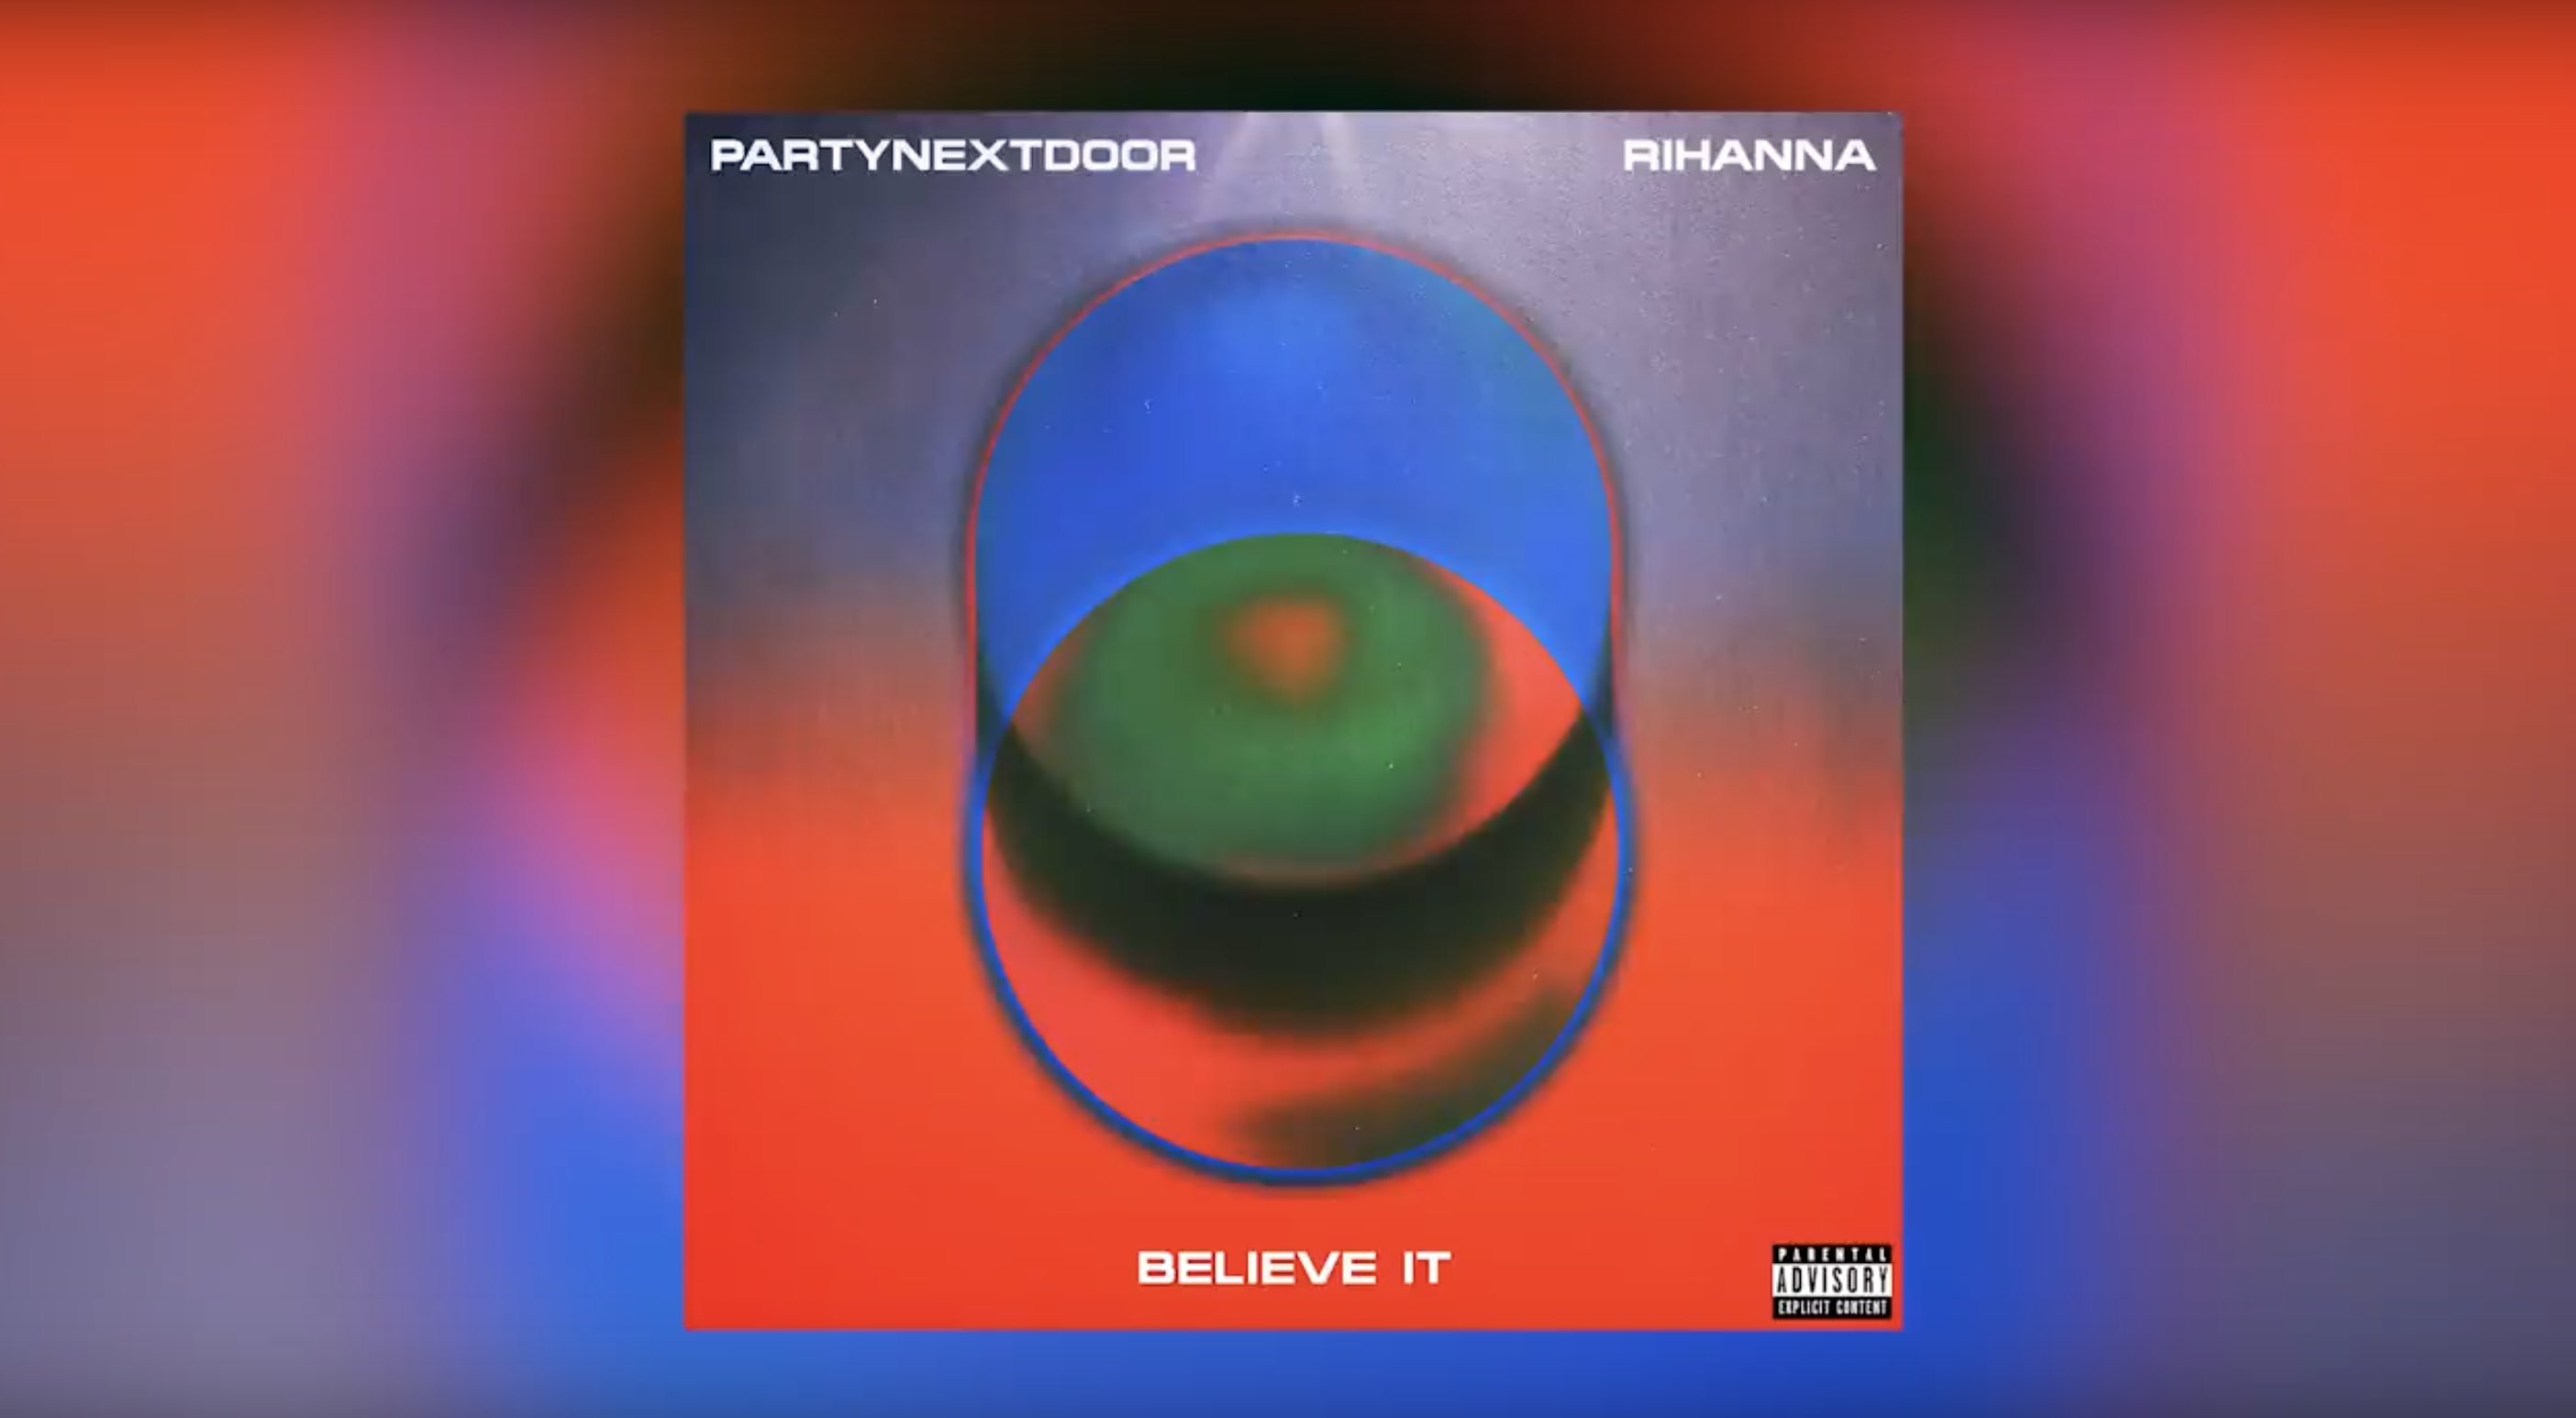 Rihanna - Partynextdoor - party mobile - believe it 